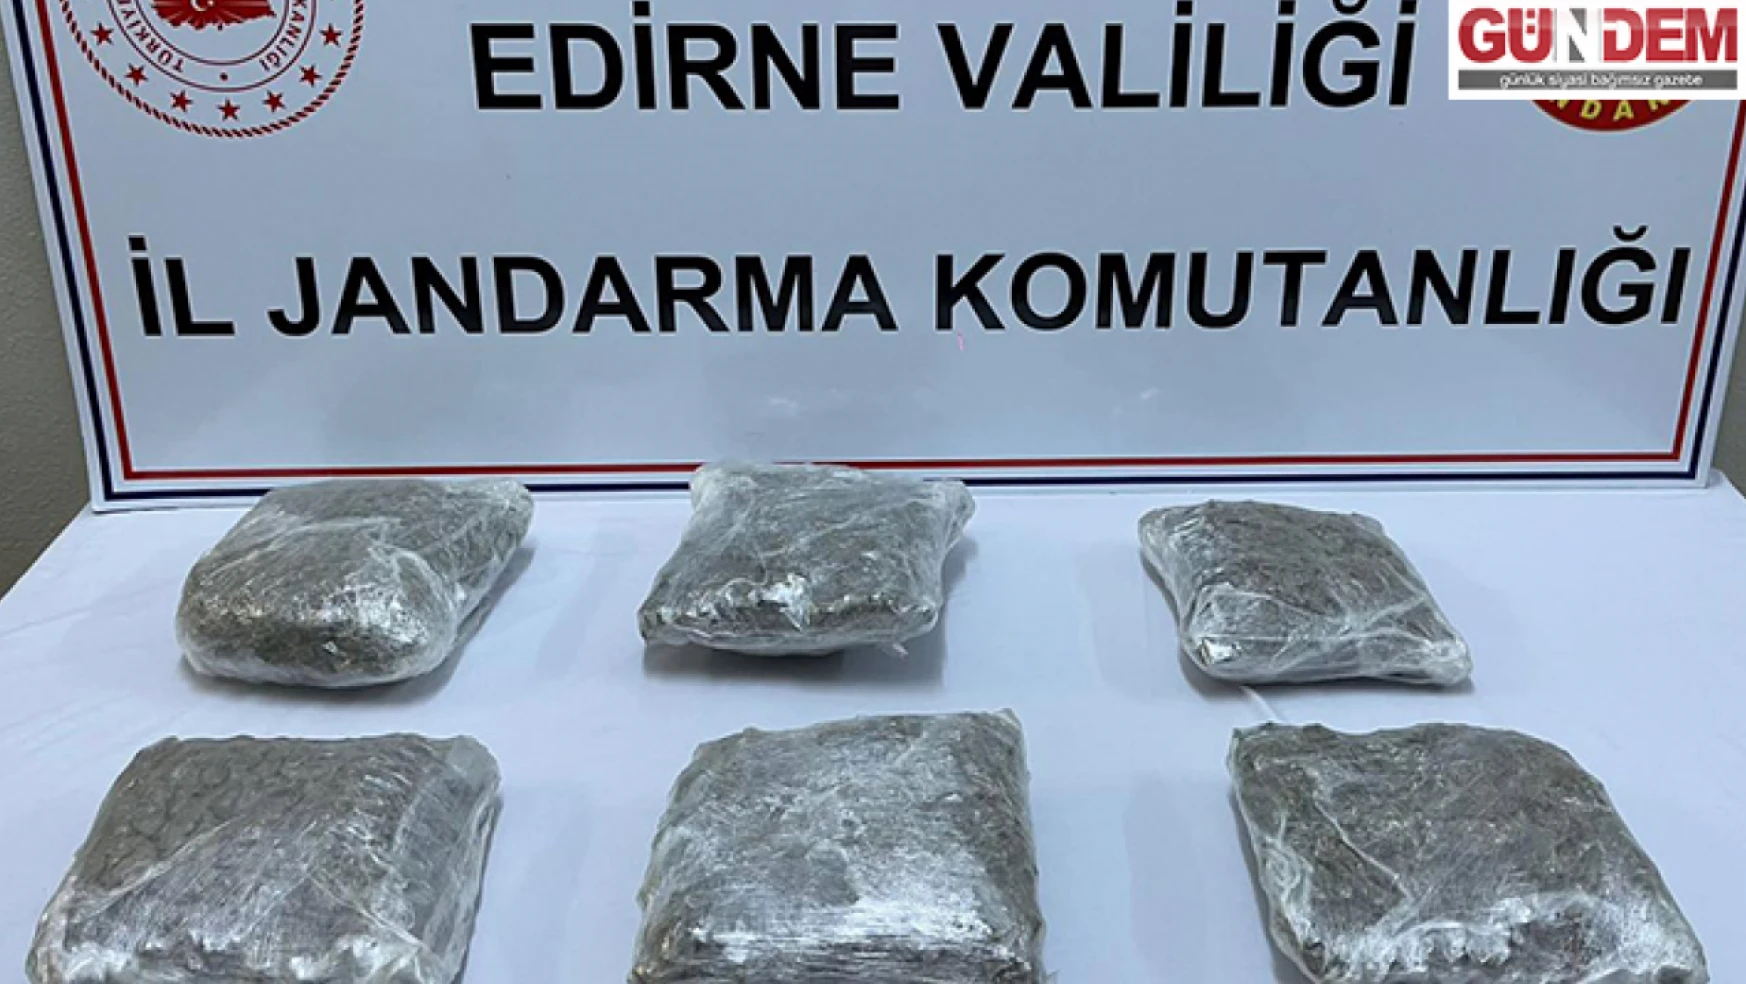 Edirne'deki uyuşturucu operasyonlarında 5 zanlı yakalandı, 26 kişiye adli işlem yapıldı